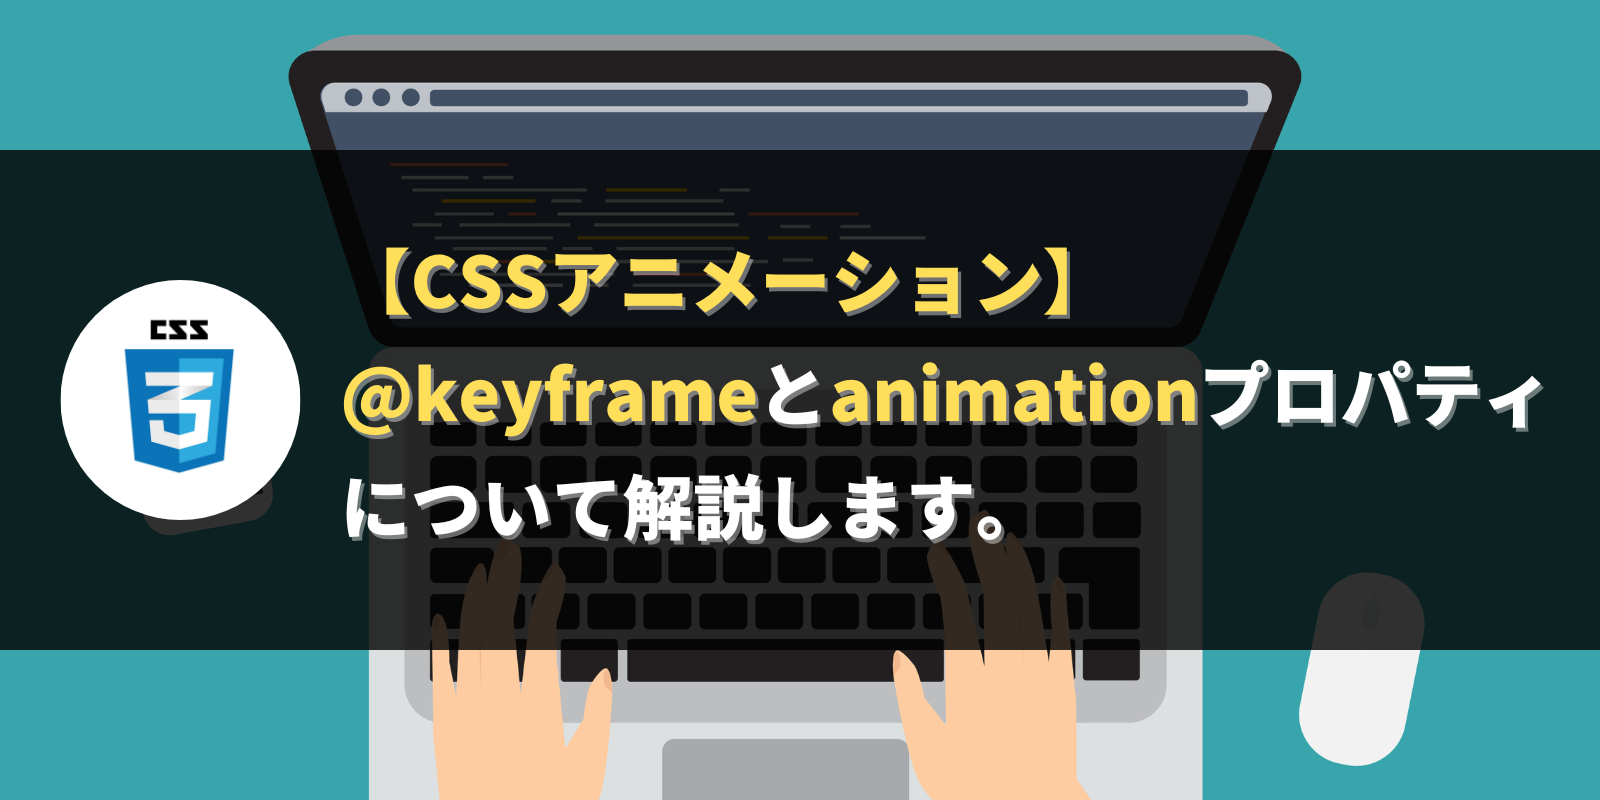 【CSSアニメーション】@keyframeとanimationプロパティについて解説します。